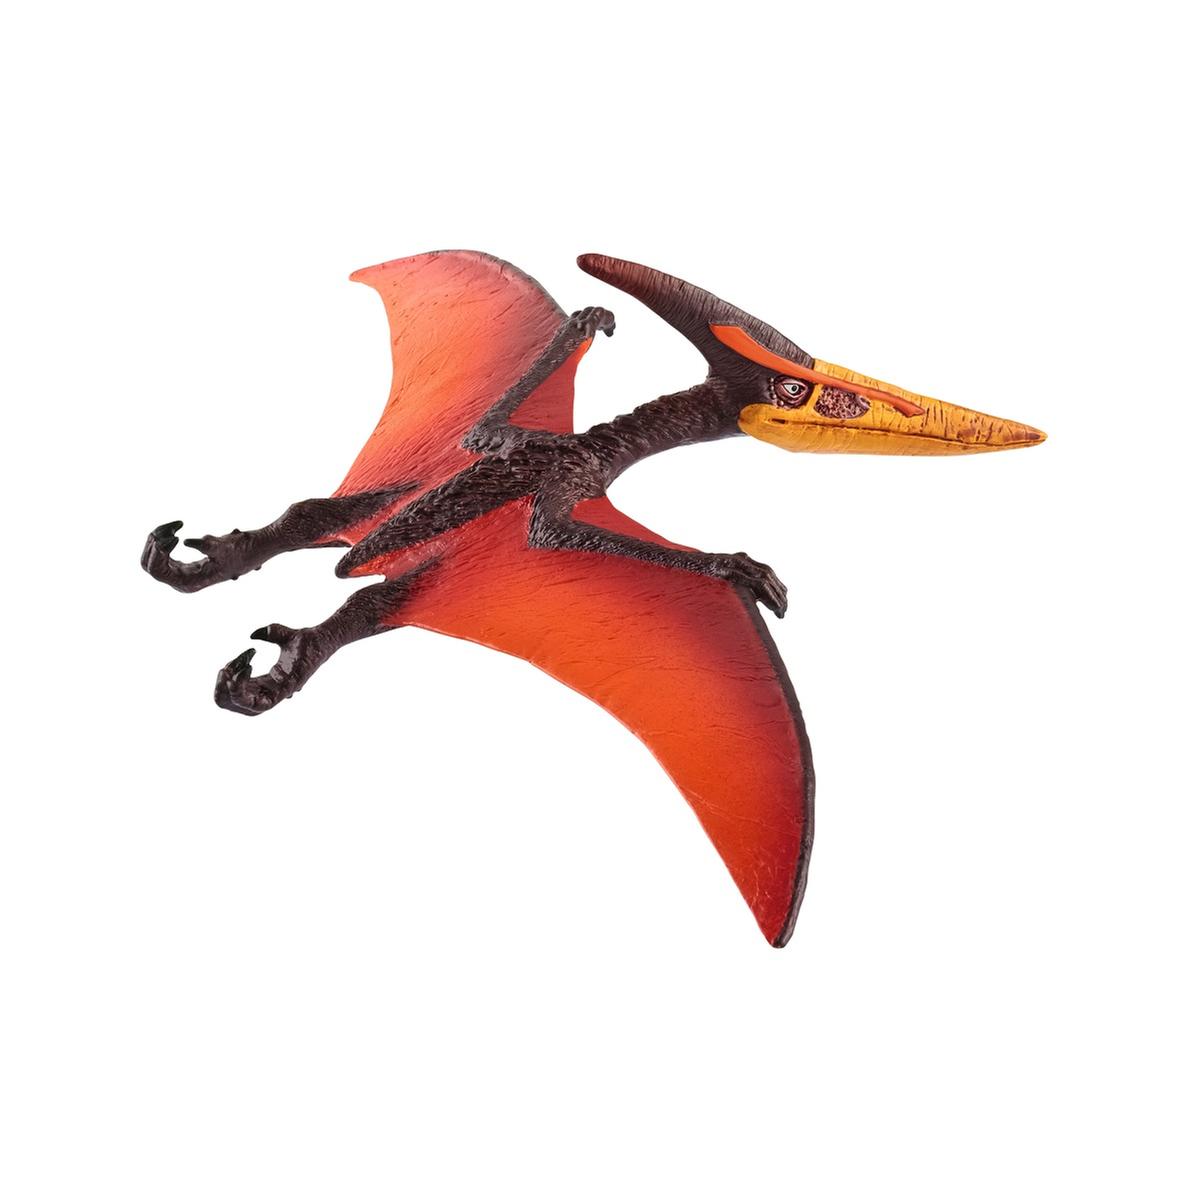 Pteranodonte e pterodáctilo são só nomes diferentes para o mesmo